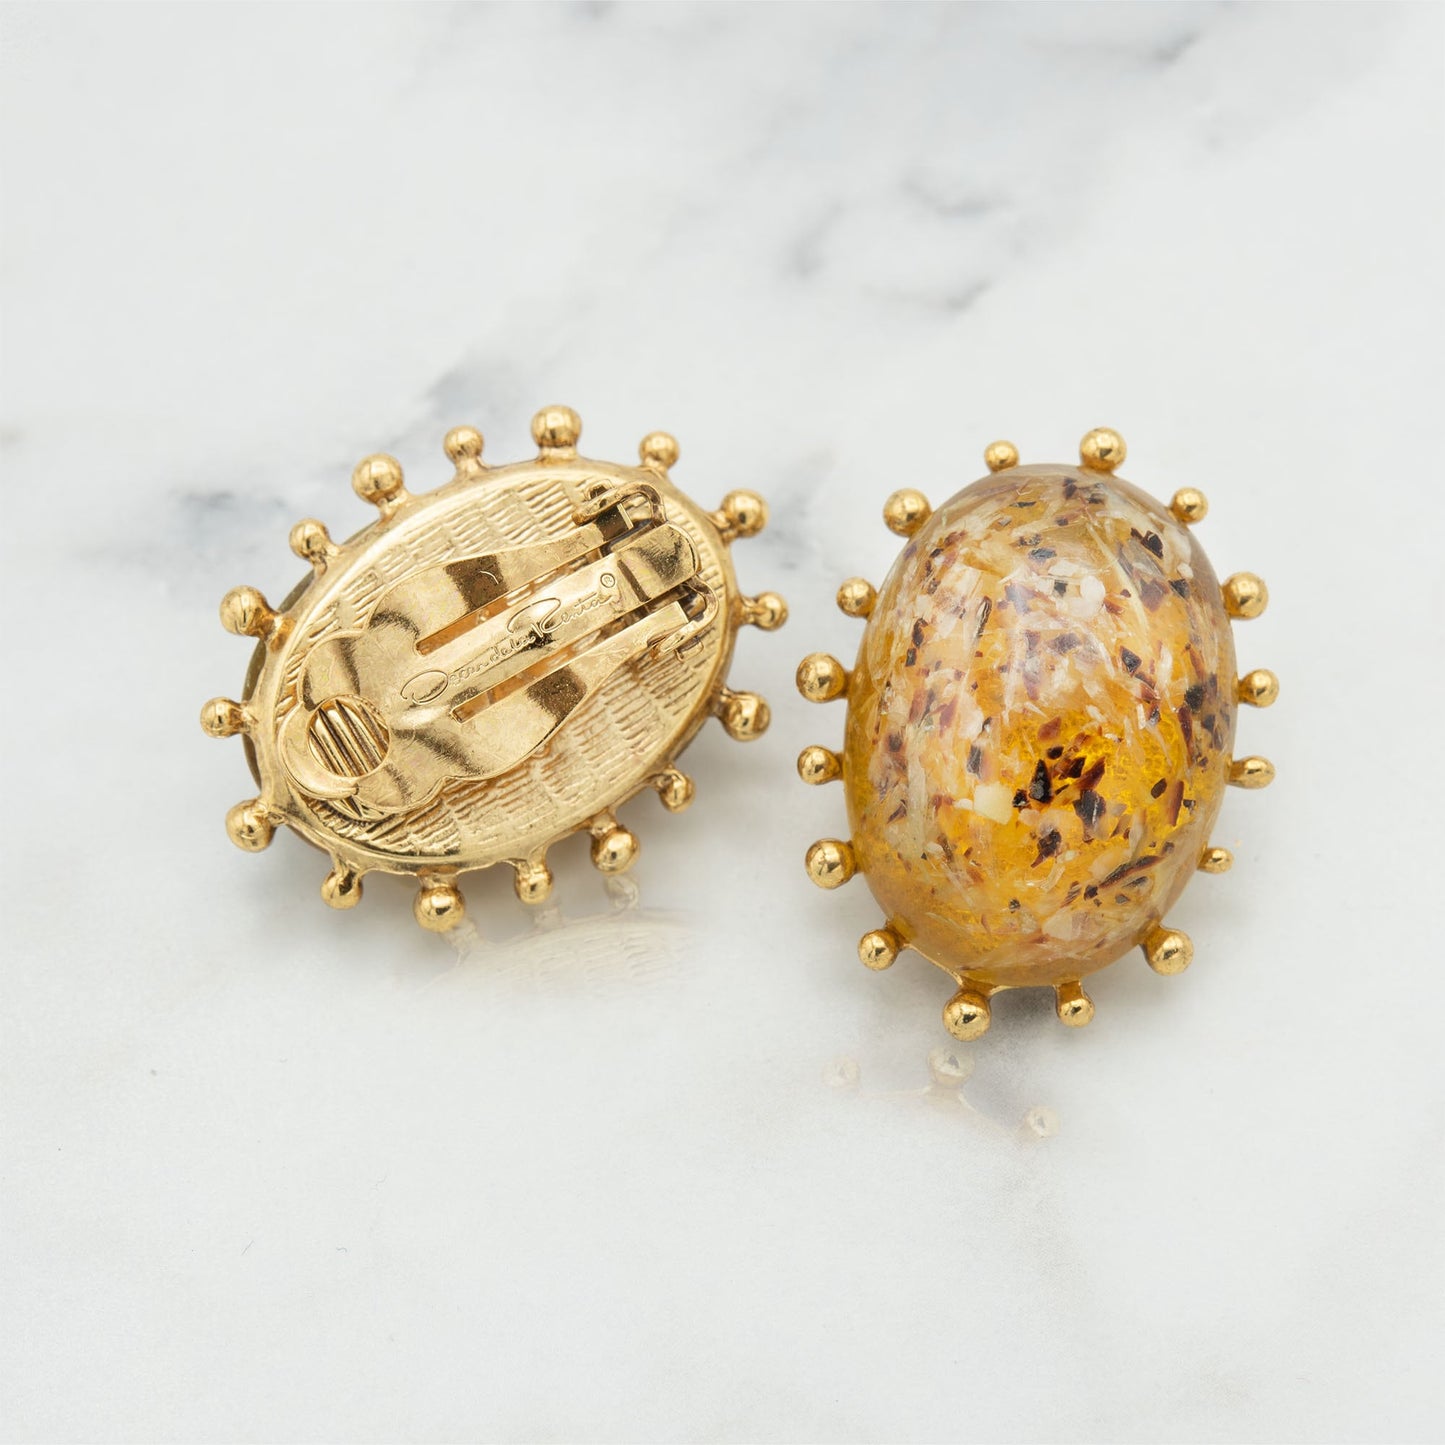 Vintage Women's Earrings Oscar de la Renta Gold Clip Earrings Oval Design 1" OSE-13491